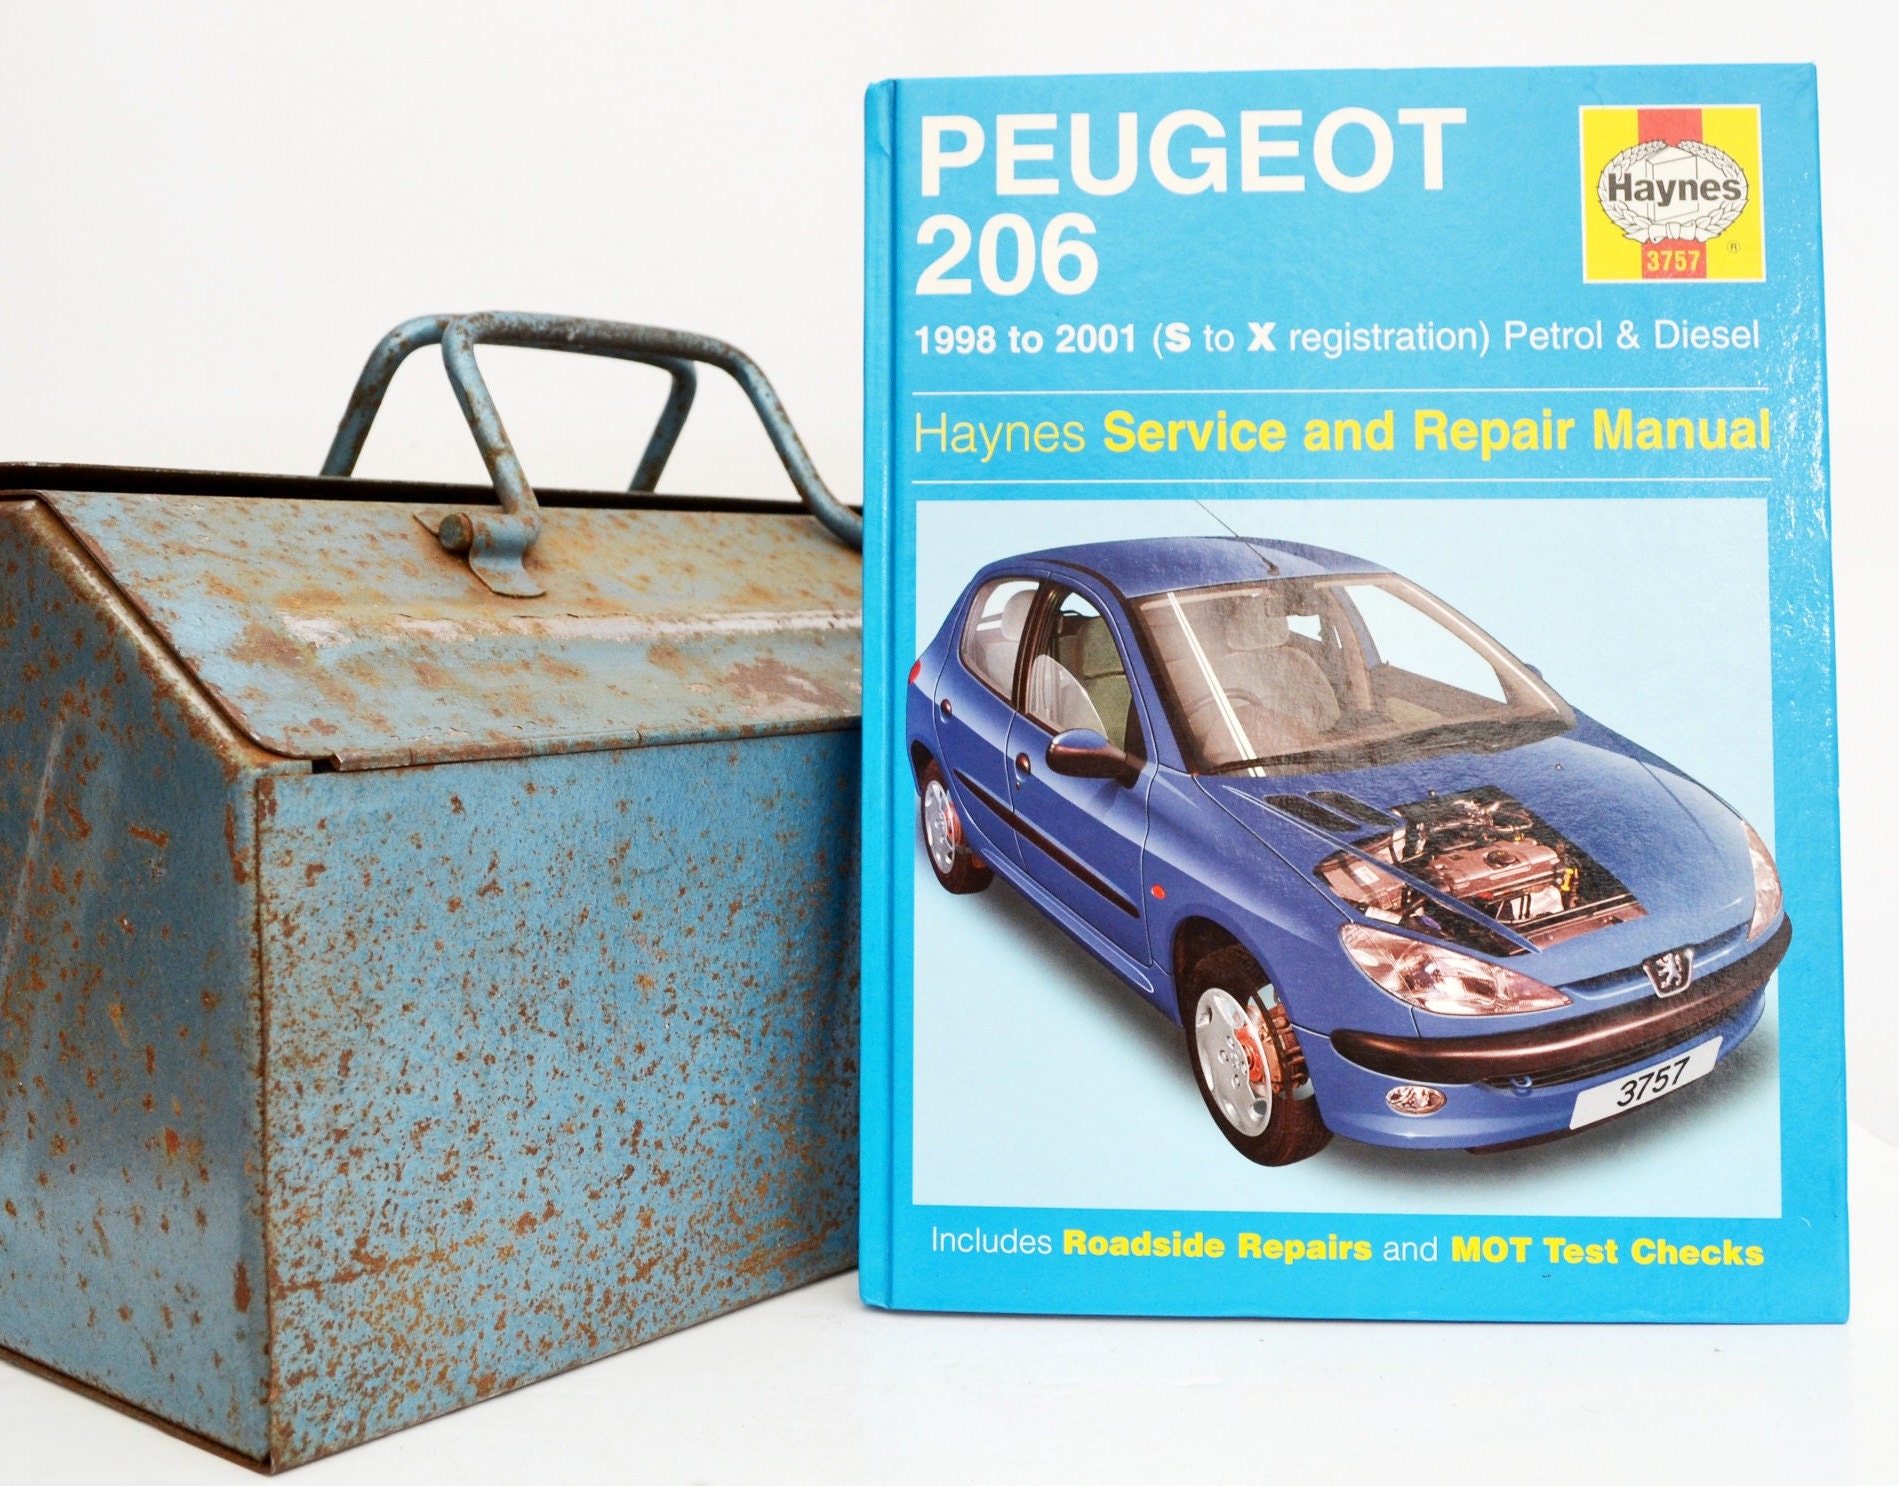 Rutsch feste Matte Autozubehör für Fiat Peugeot kreative Auto